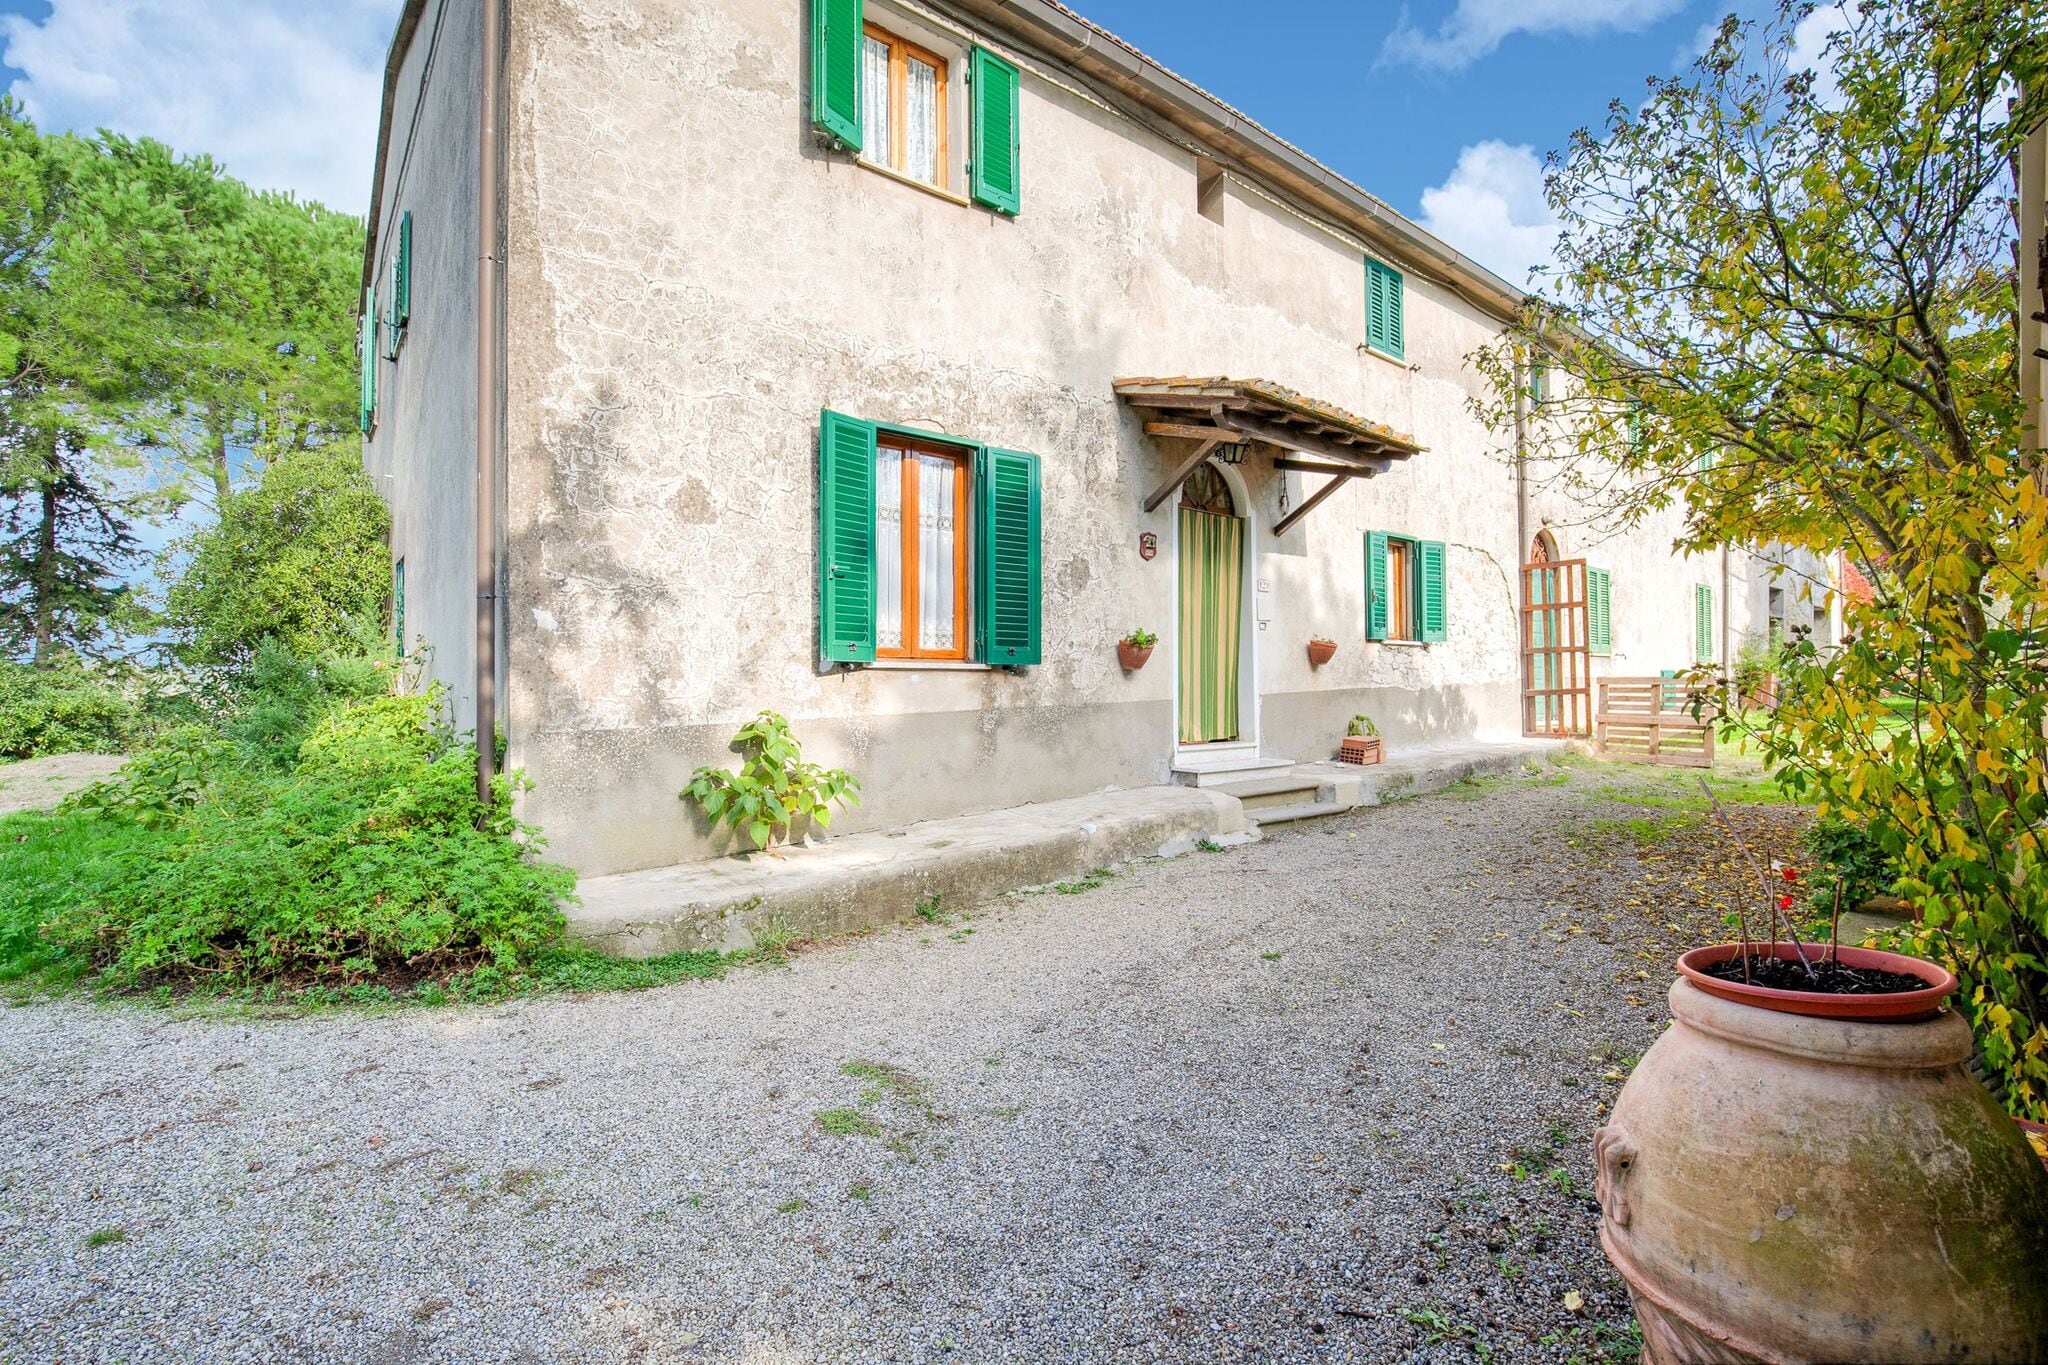 Das Erholsame Ferienhaus in Chianni mit Garten, Terrasse, Grill